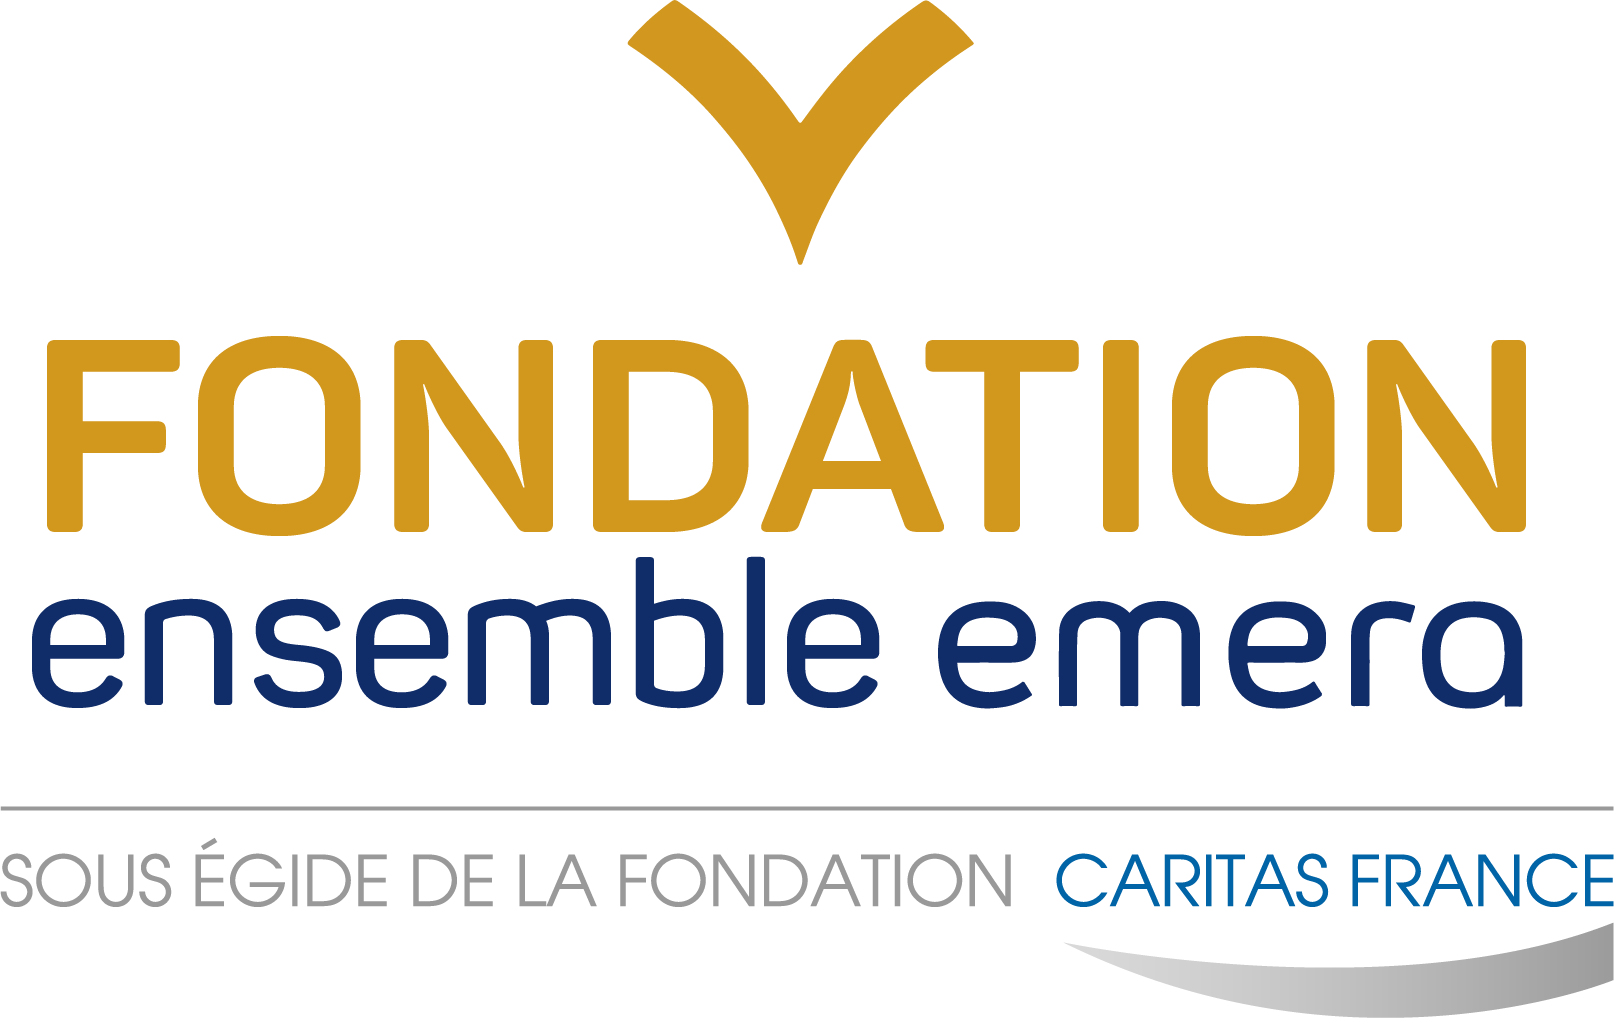 Fondation Ensemble Emera